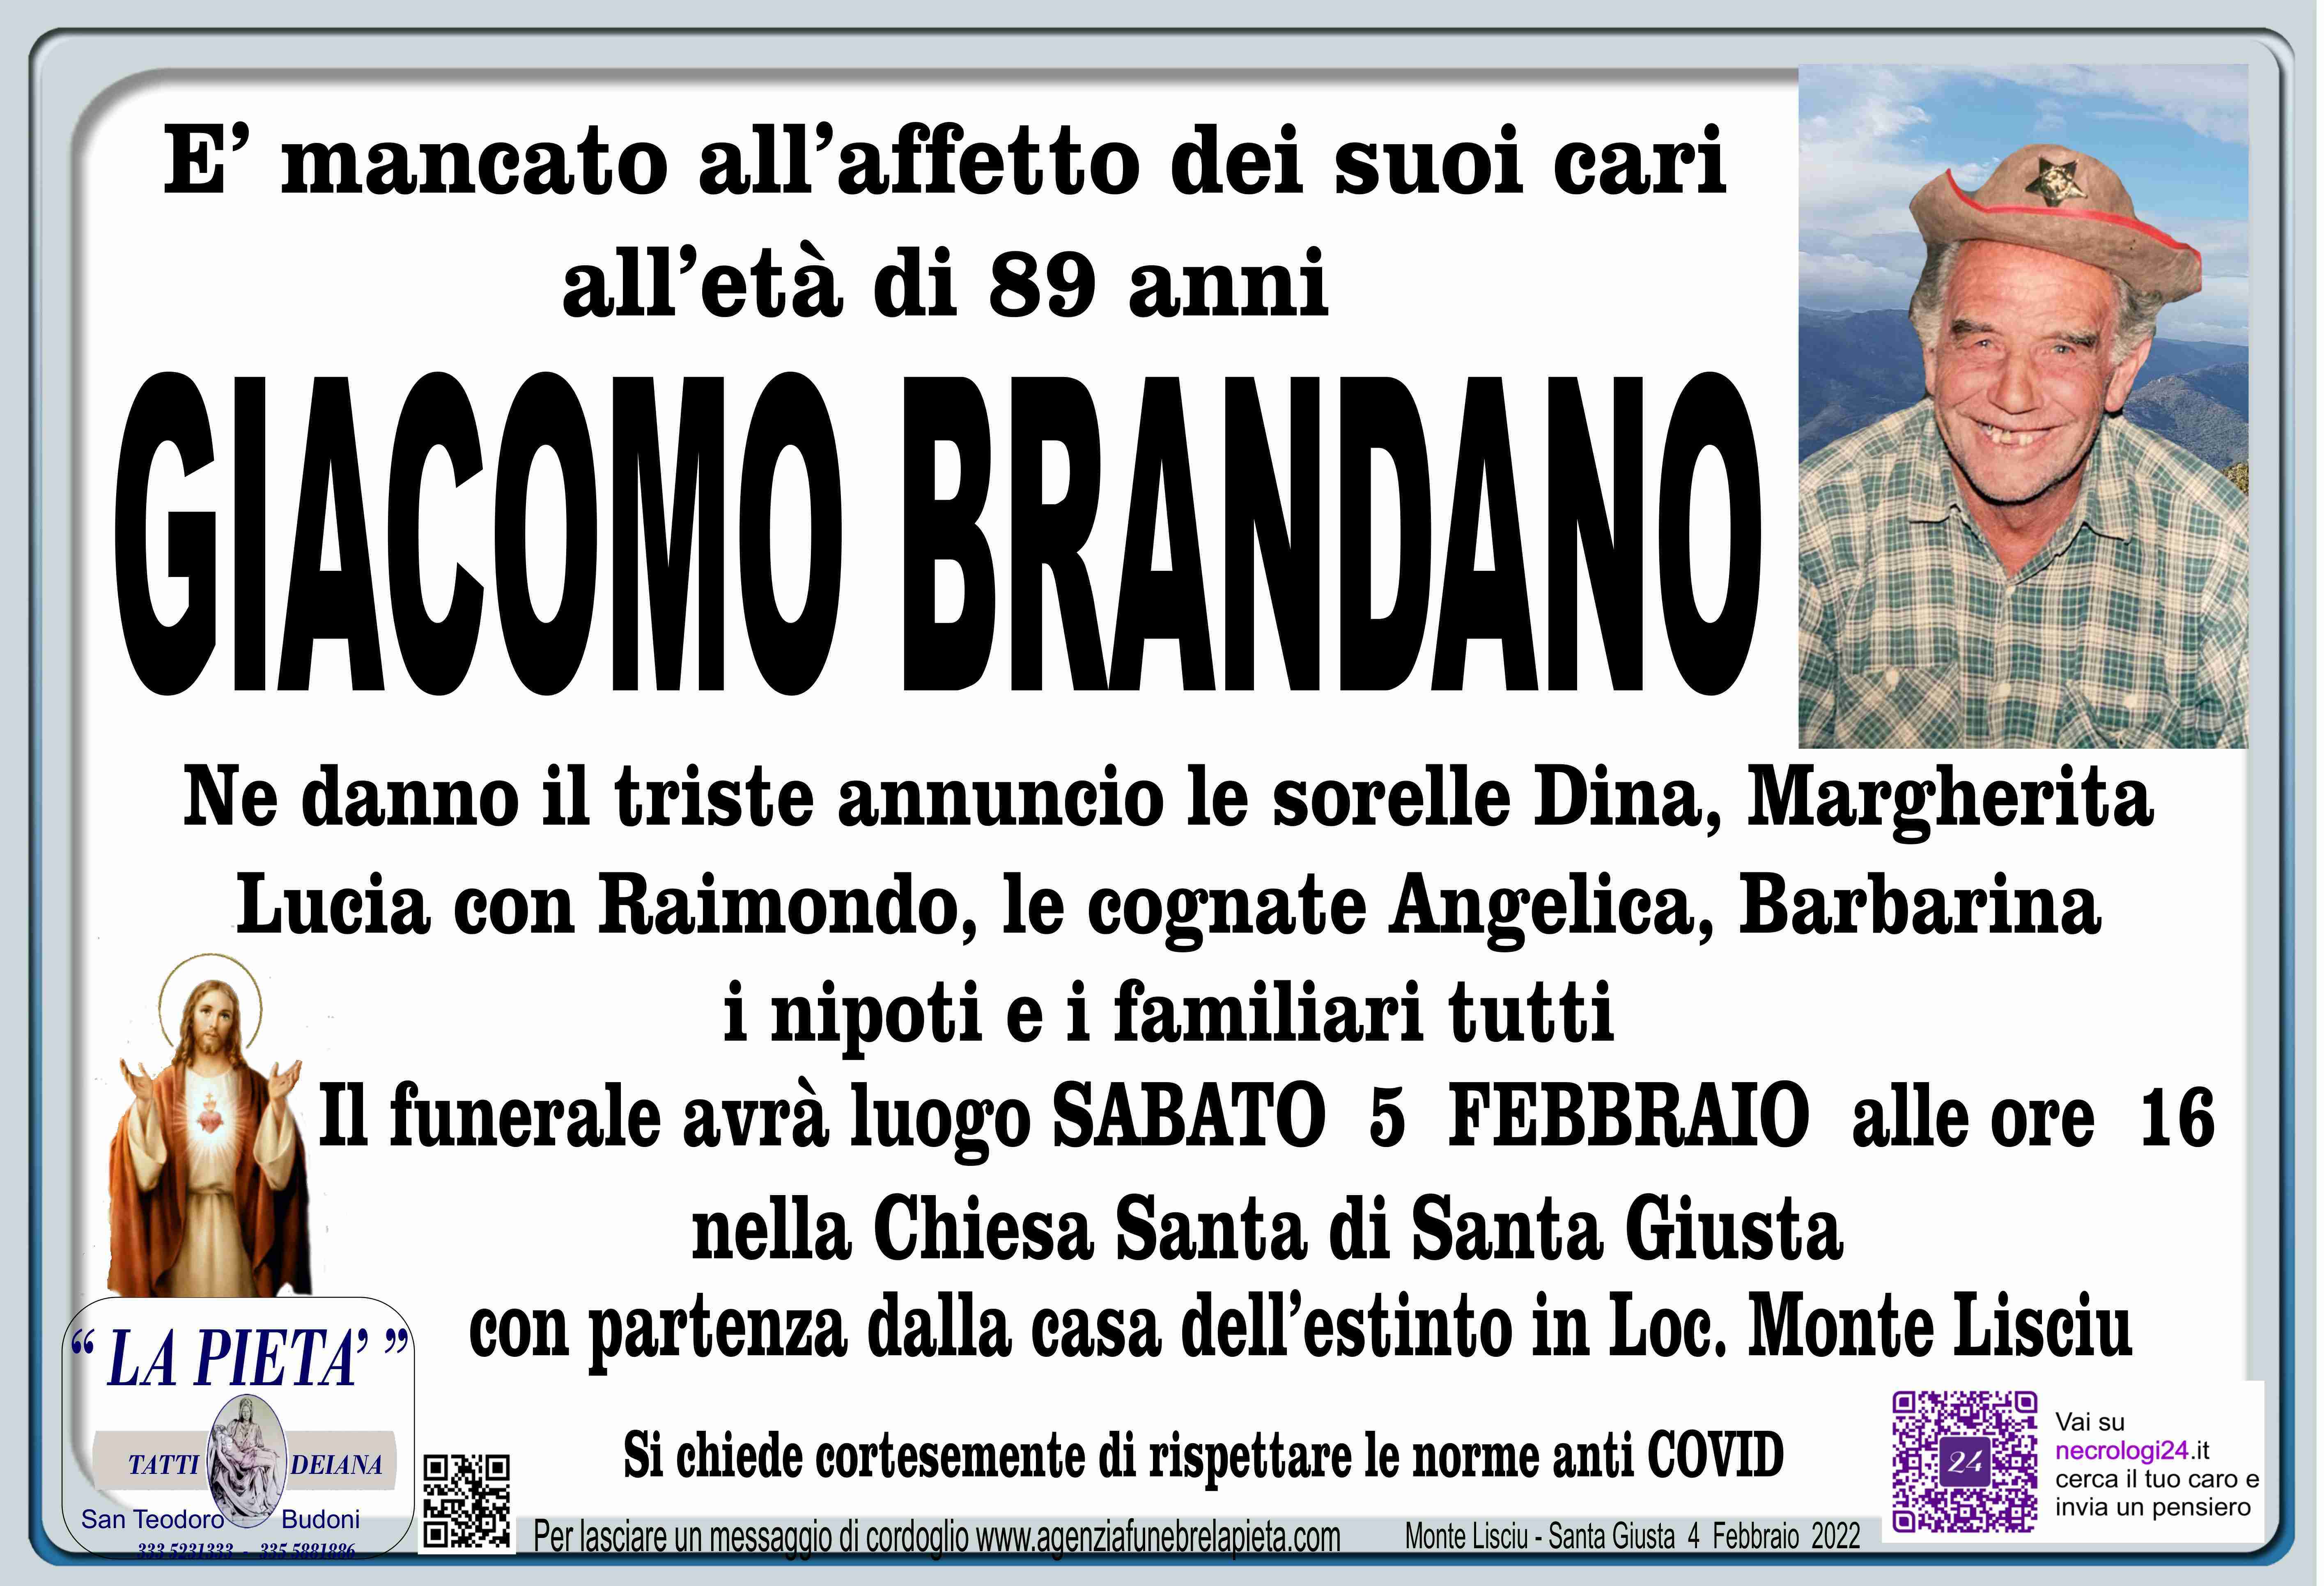 Giacomo Brandano